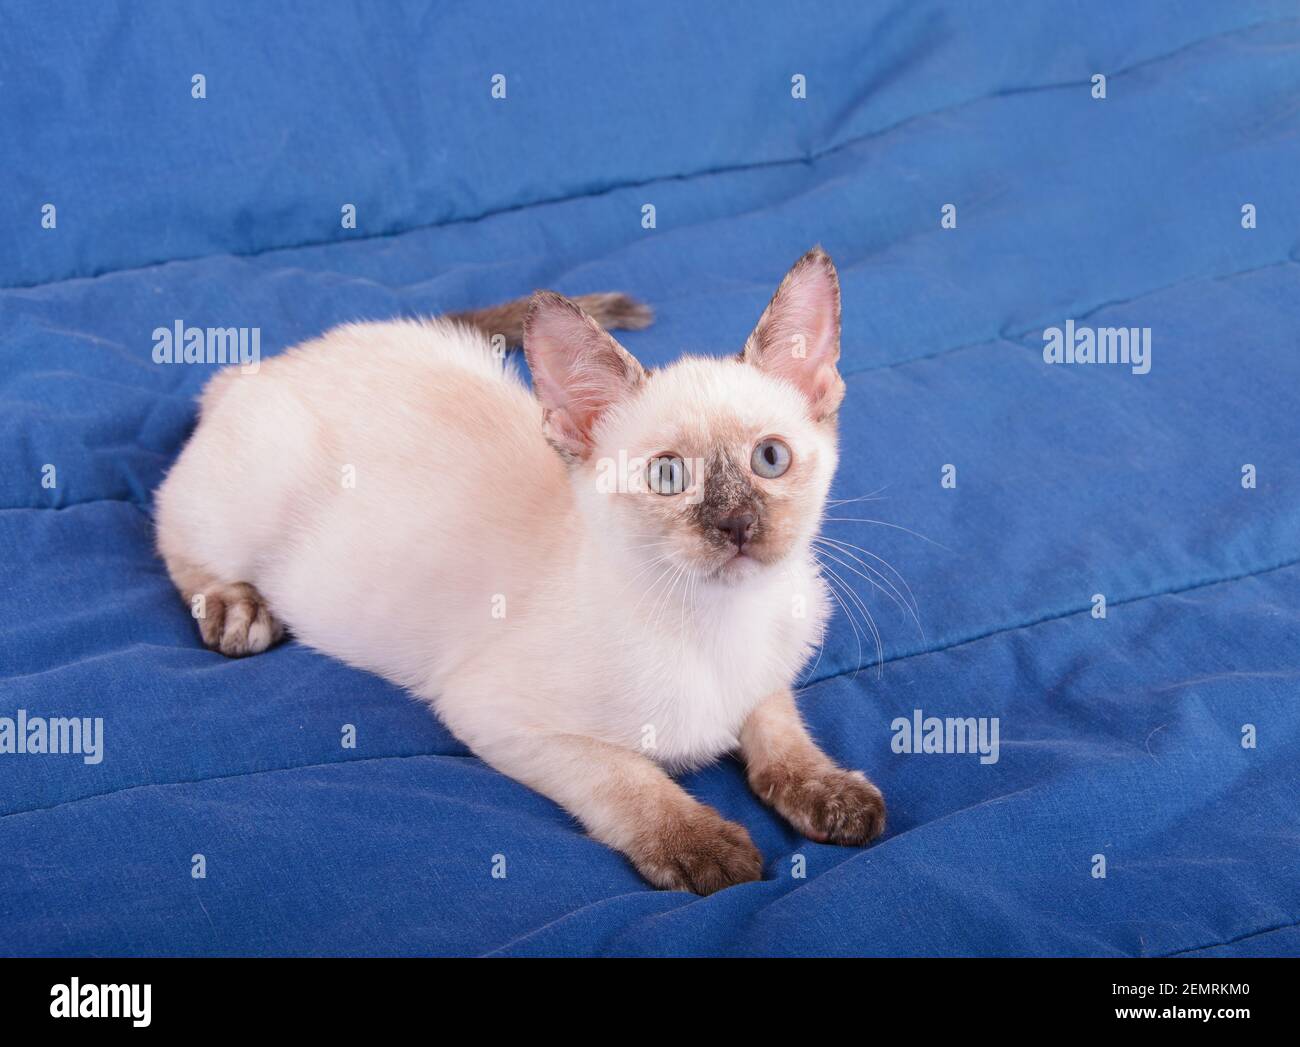 Schöne junge tortie Point Siam Kätzchen ruht auf einer blauen Decke, Blick nach oben Stockfoto